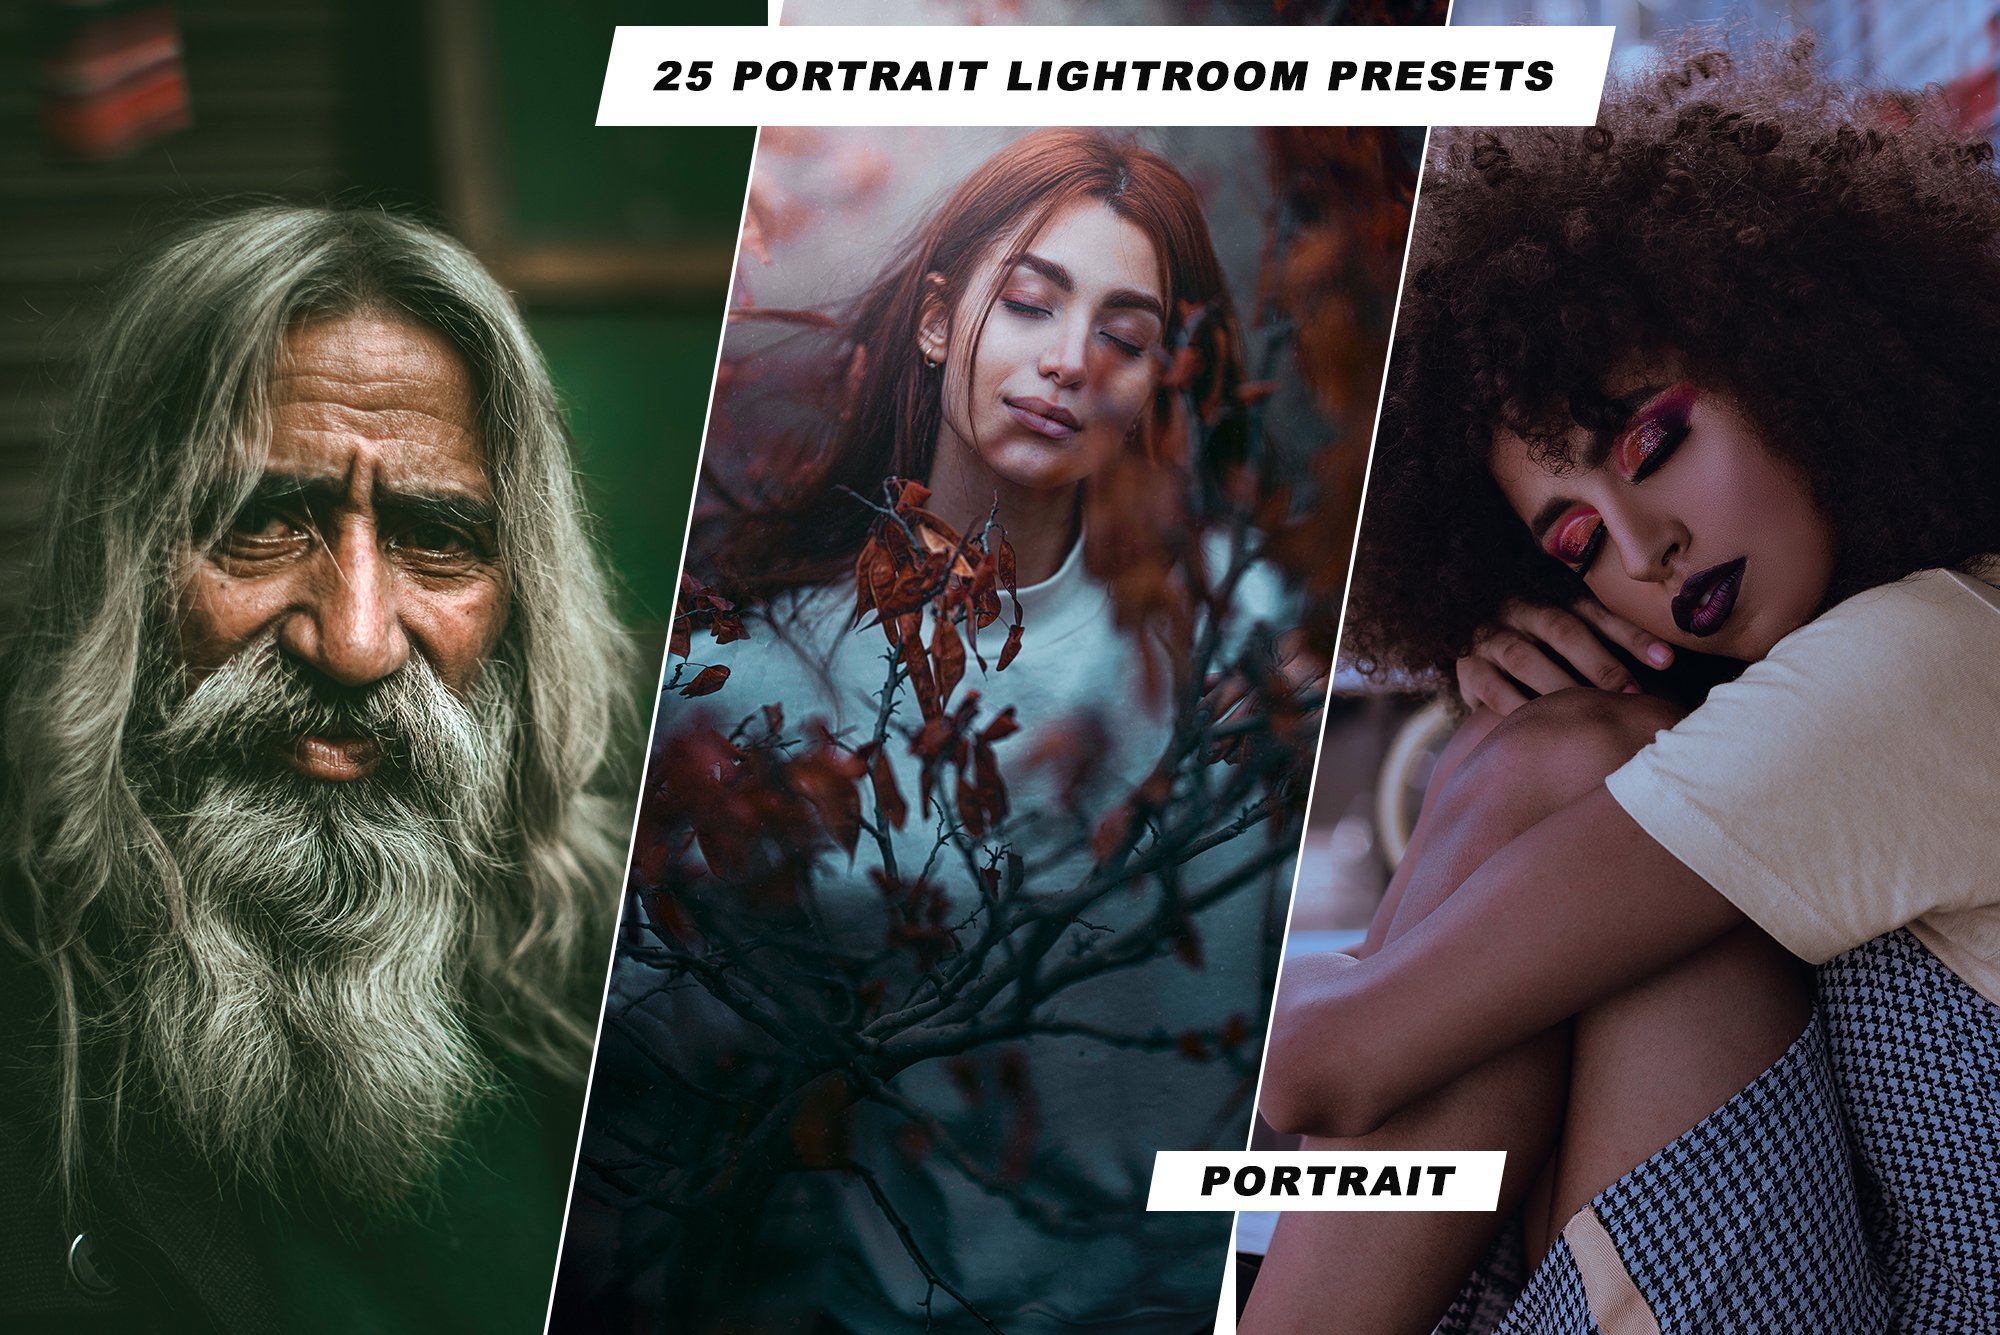 25 Portrait Lightroom Presetscover image.